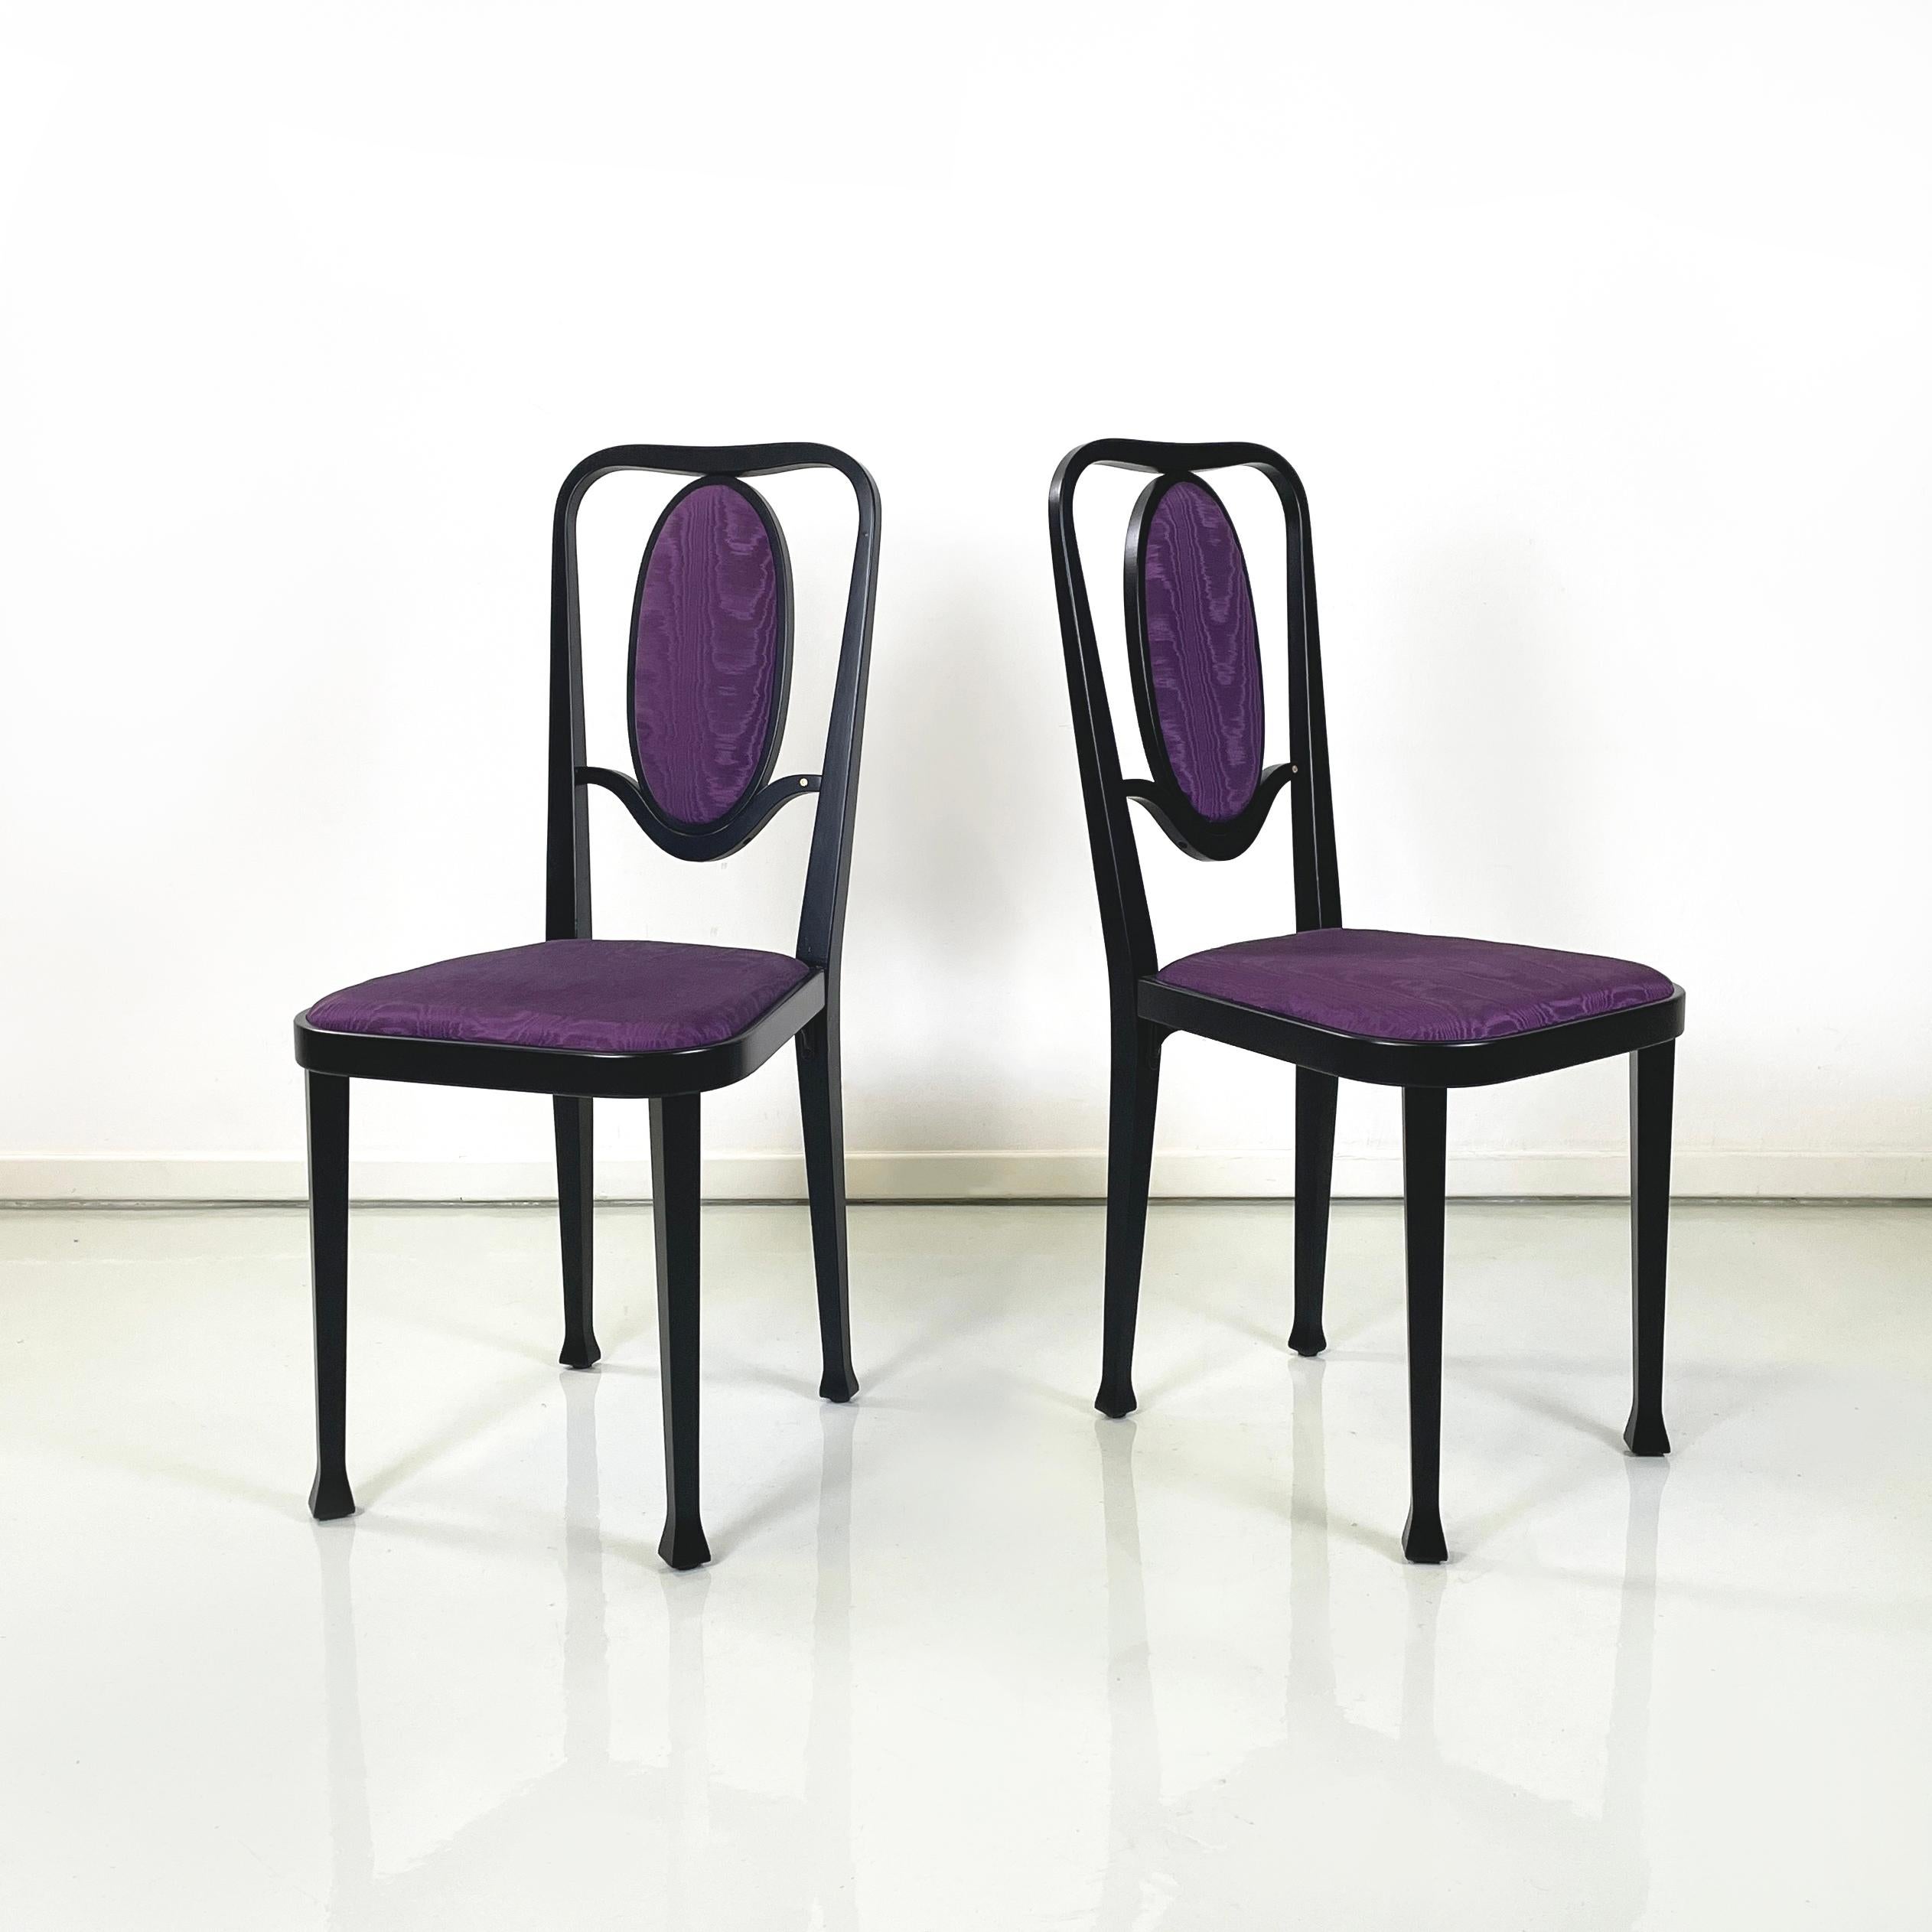 Ensemble de 3 chaises mod. 414 avec assise carrée et dossier ovale, rembourré et recouvert de tissu de soie violet vif. La structure est entièrement réalisée en bois laqué noir, avec une finition mate. Le pied du fauteuil a une section carrée avec